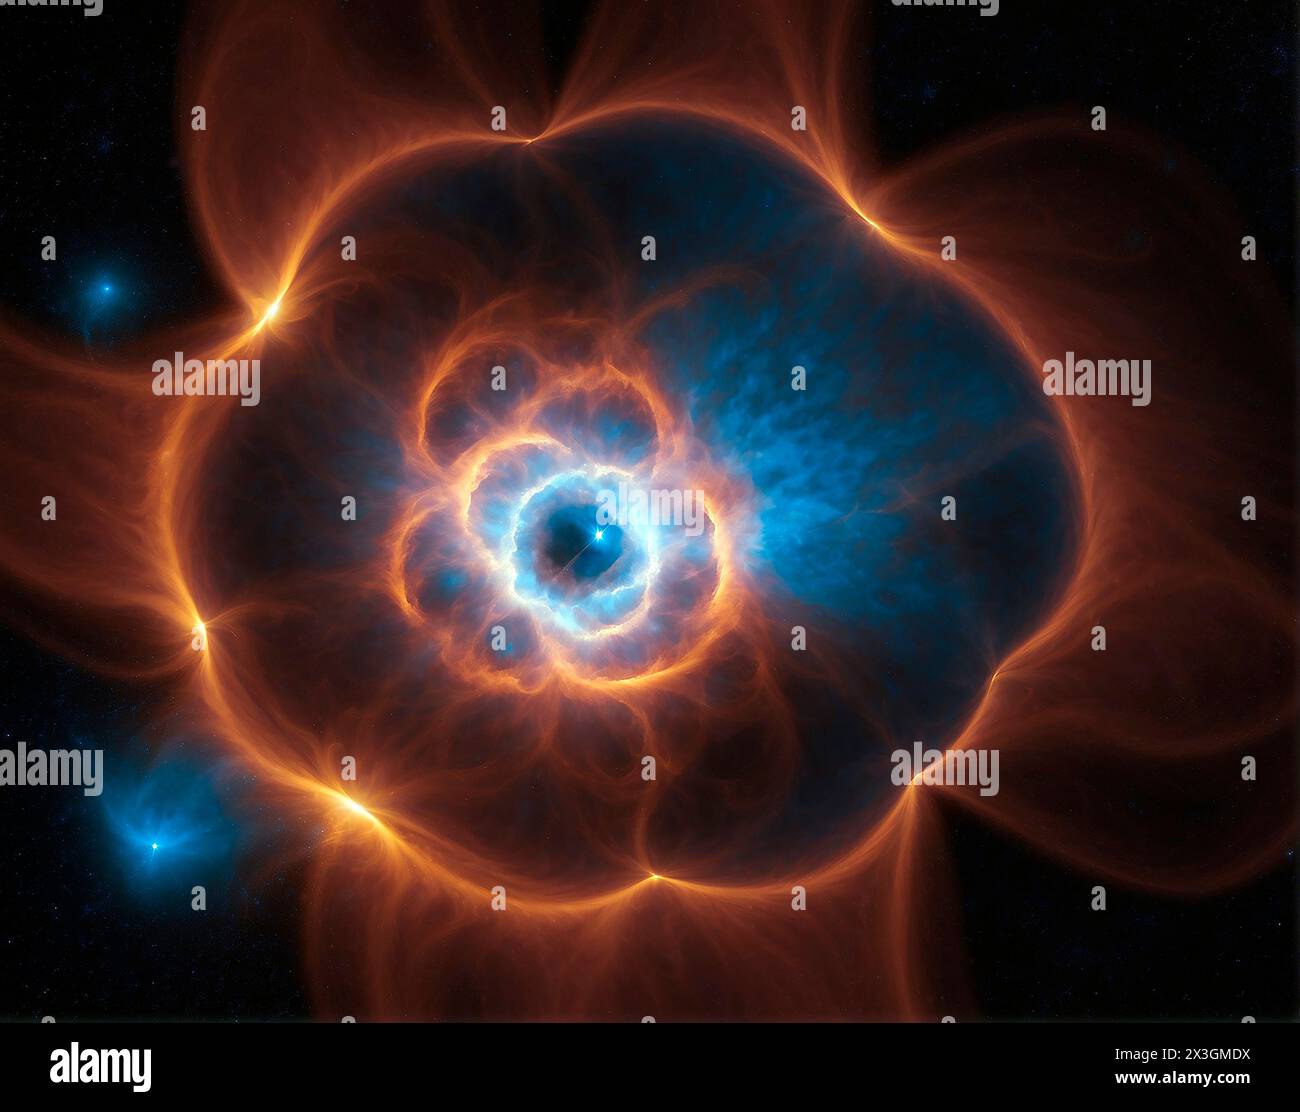 Stella di neutroni, illustrazione. Le stelle neutroni vengono create quando le stelle massicce crollano. Nel centro di stelle massicce, elettroni e protoni si fondono nell'eac Foto Stock